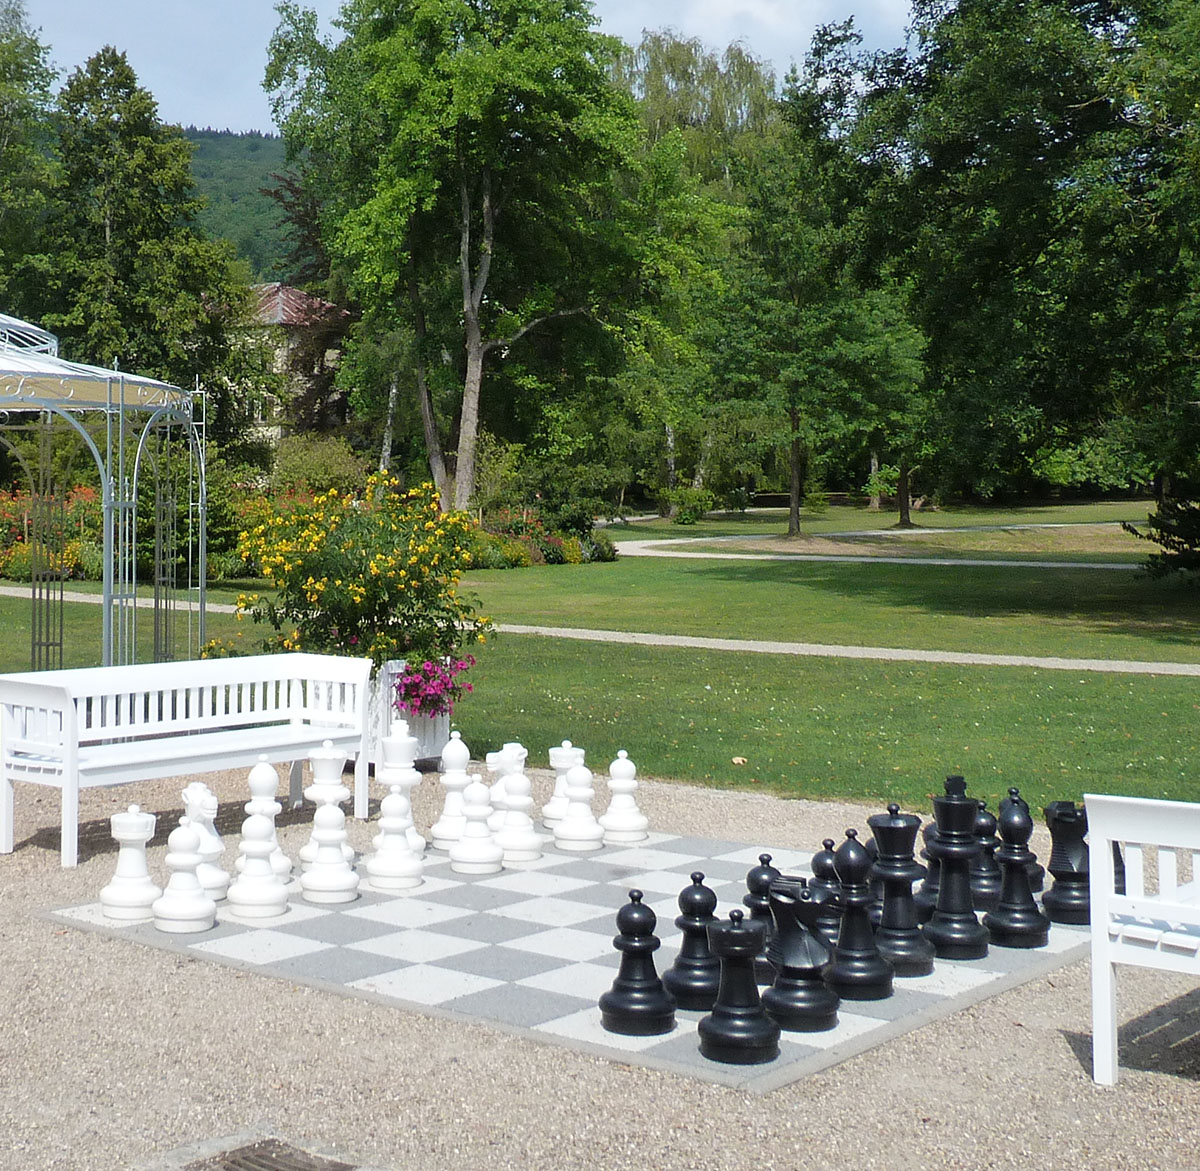 Bad Brückenauer Park mit Schachspiel